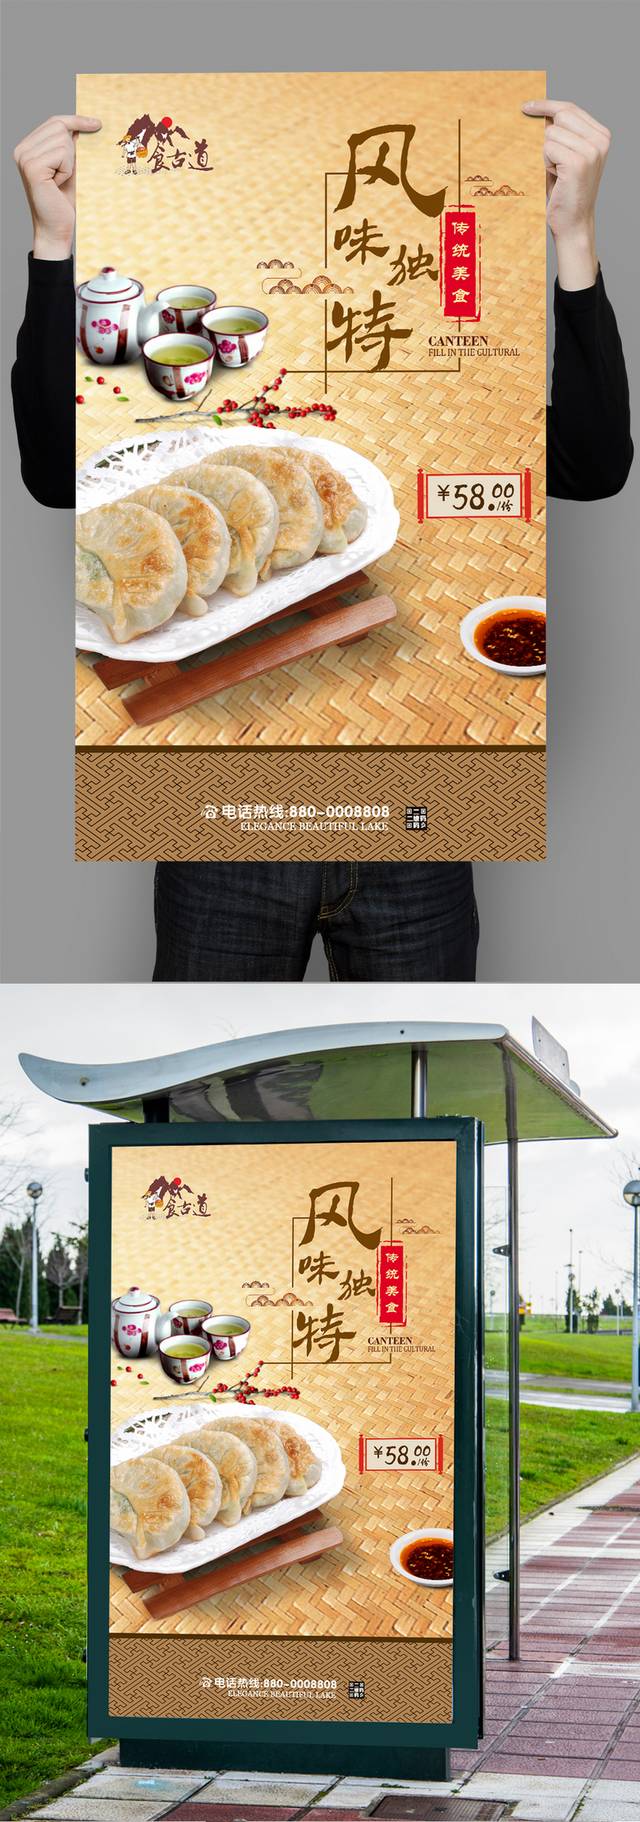 中国风韭菜盒子海报设计psd